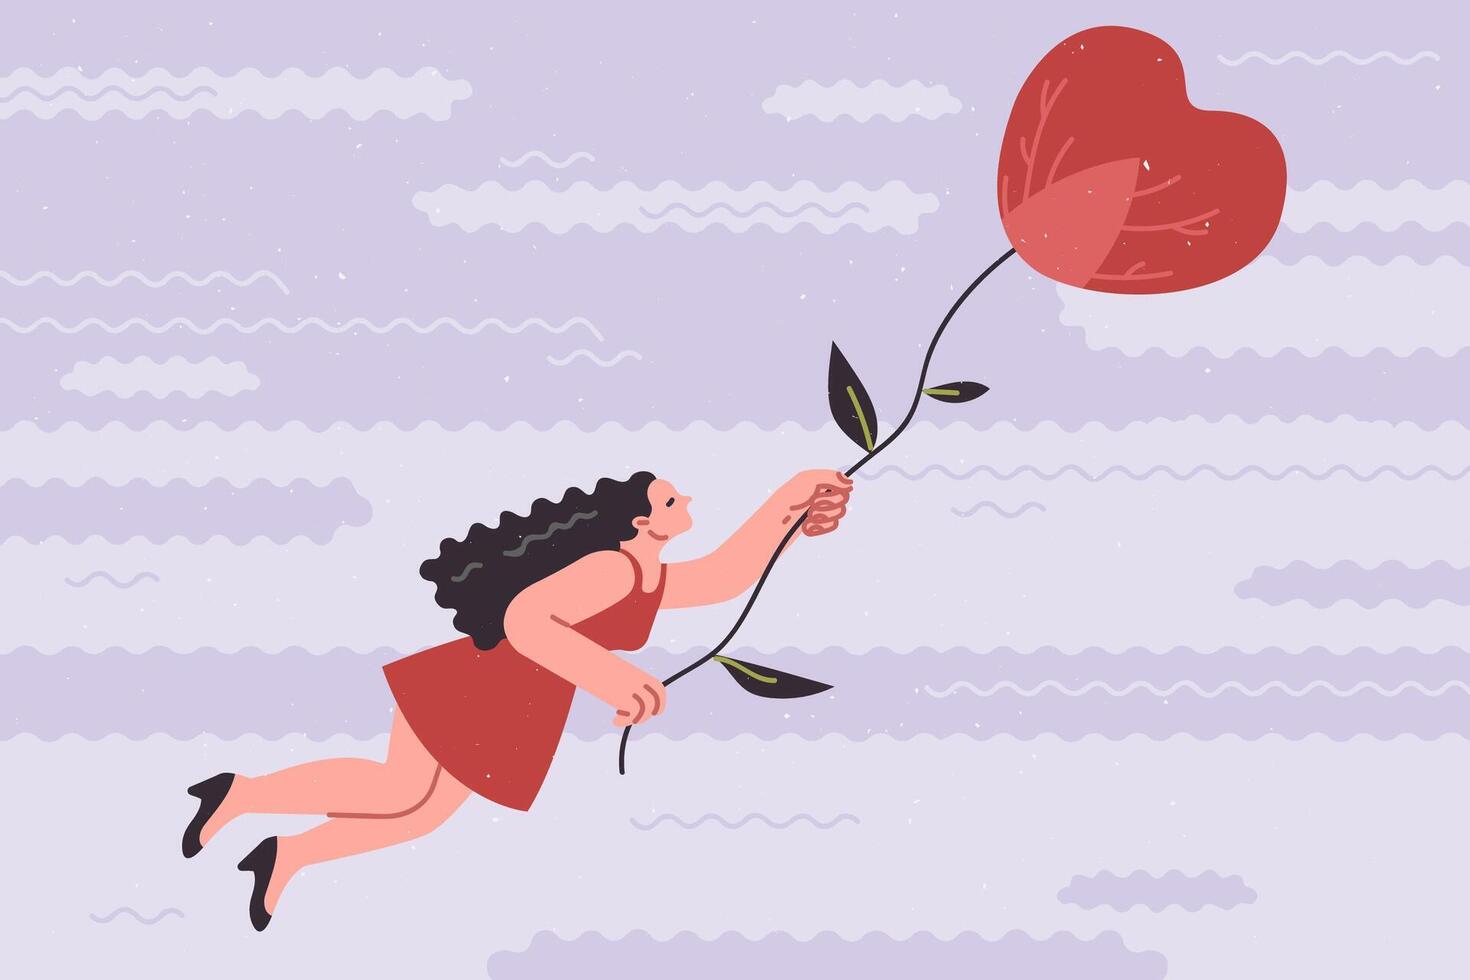 kvinna flugor i hjärta formad varm luft ballong, upplever glädje efter tar emot deklaration av kärlek vektor